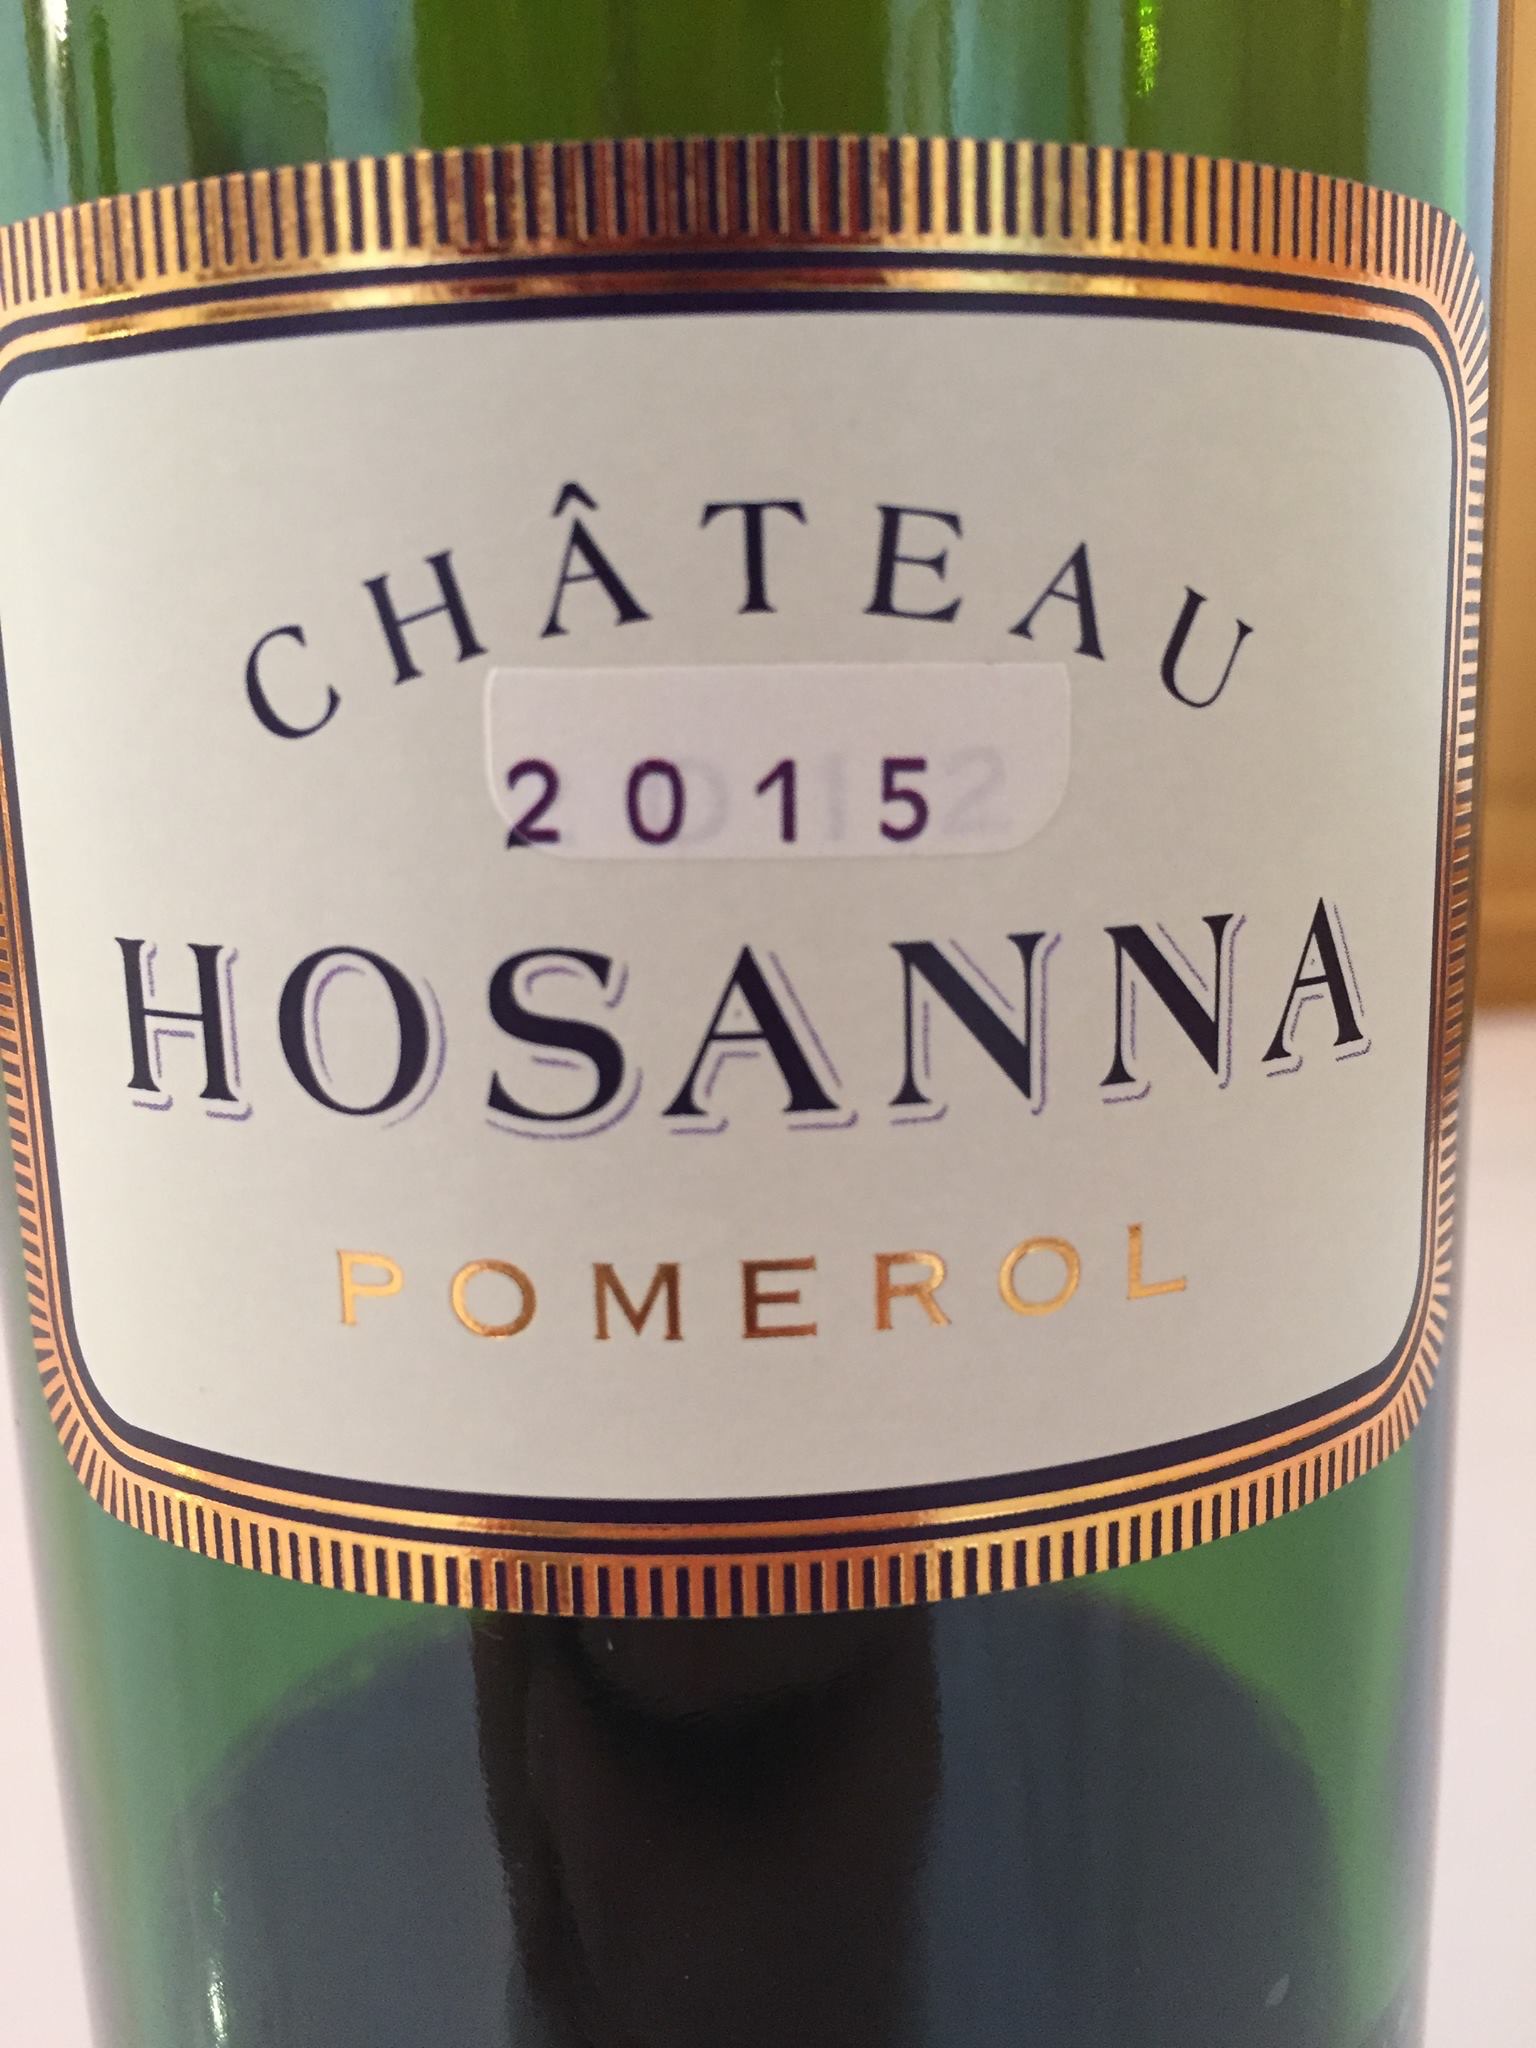 Château Hosanna 2015 – Pomerol